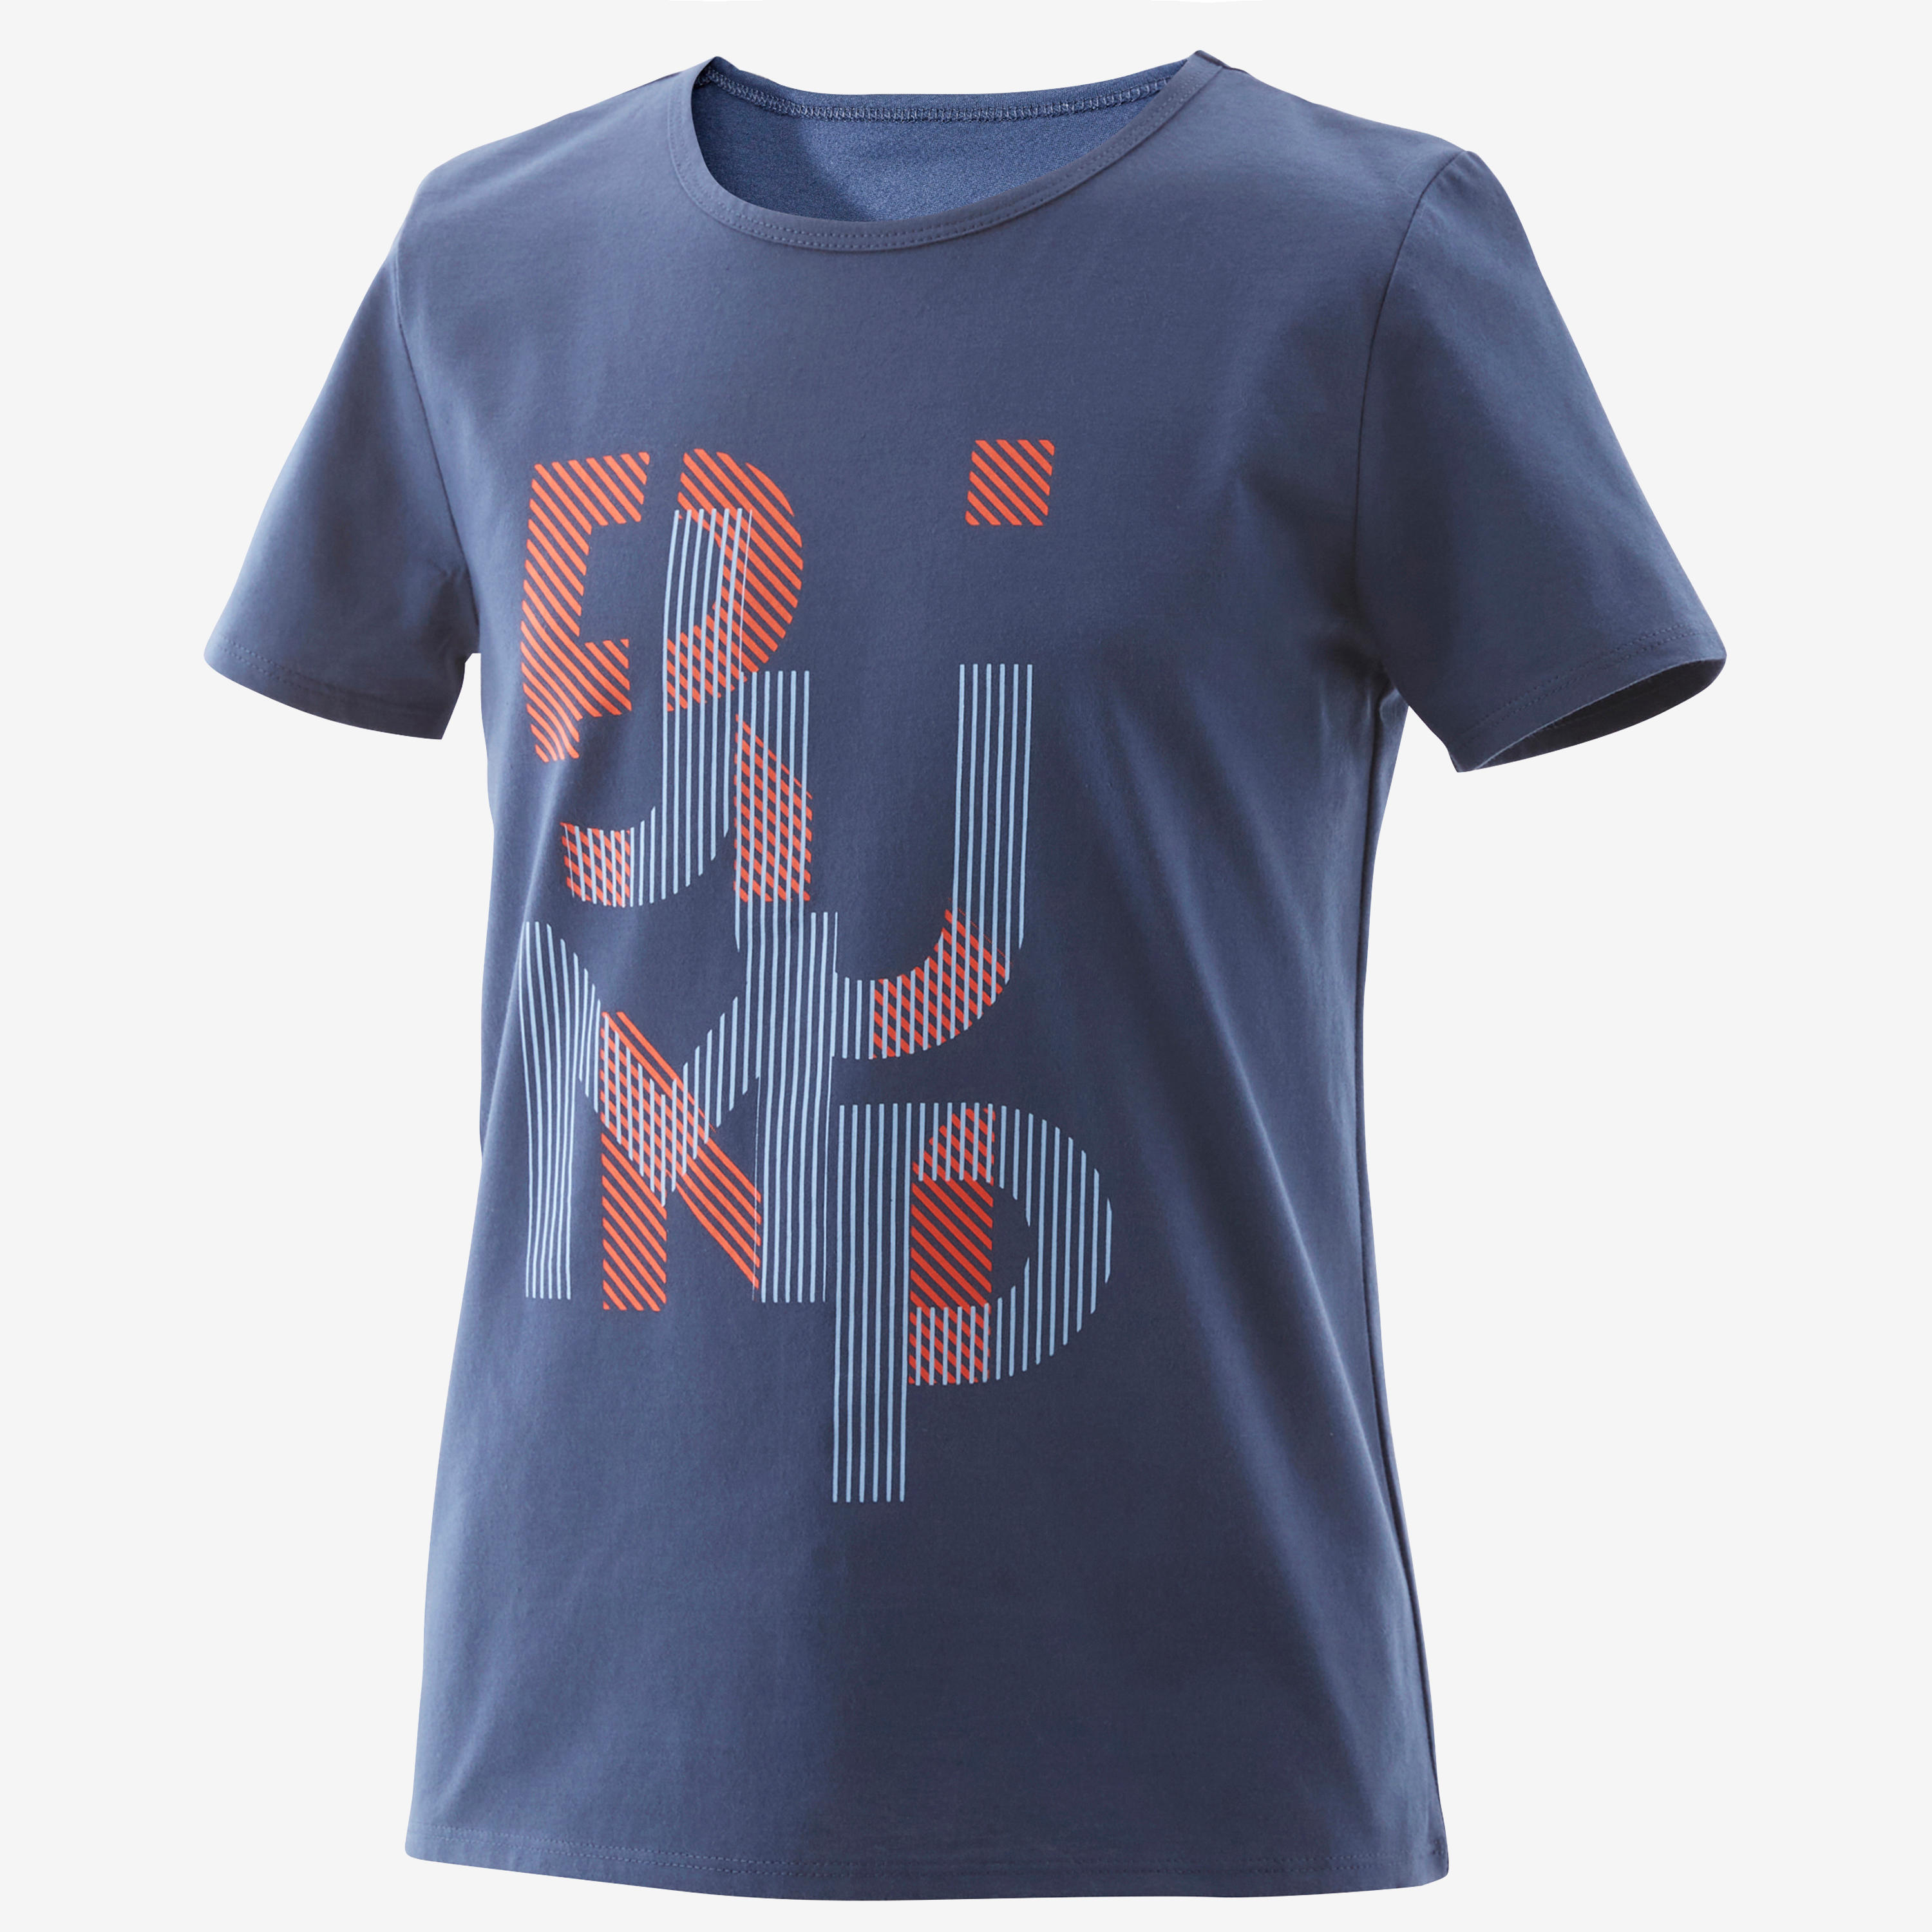 Kids' Basic T-Shirt - Blue Jean Print 2/4